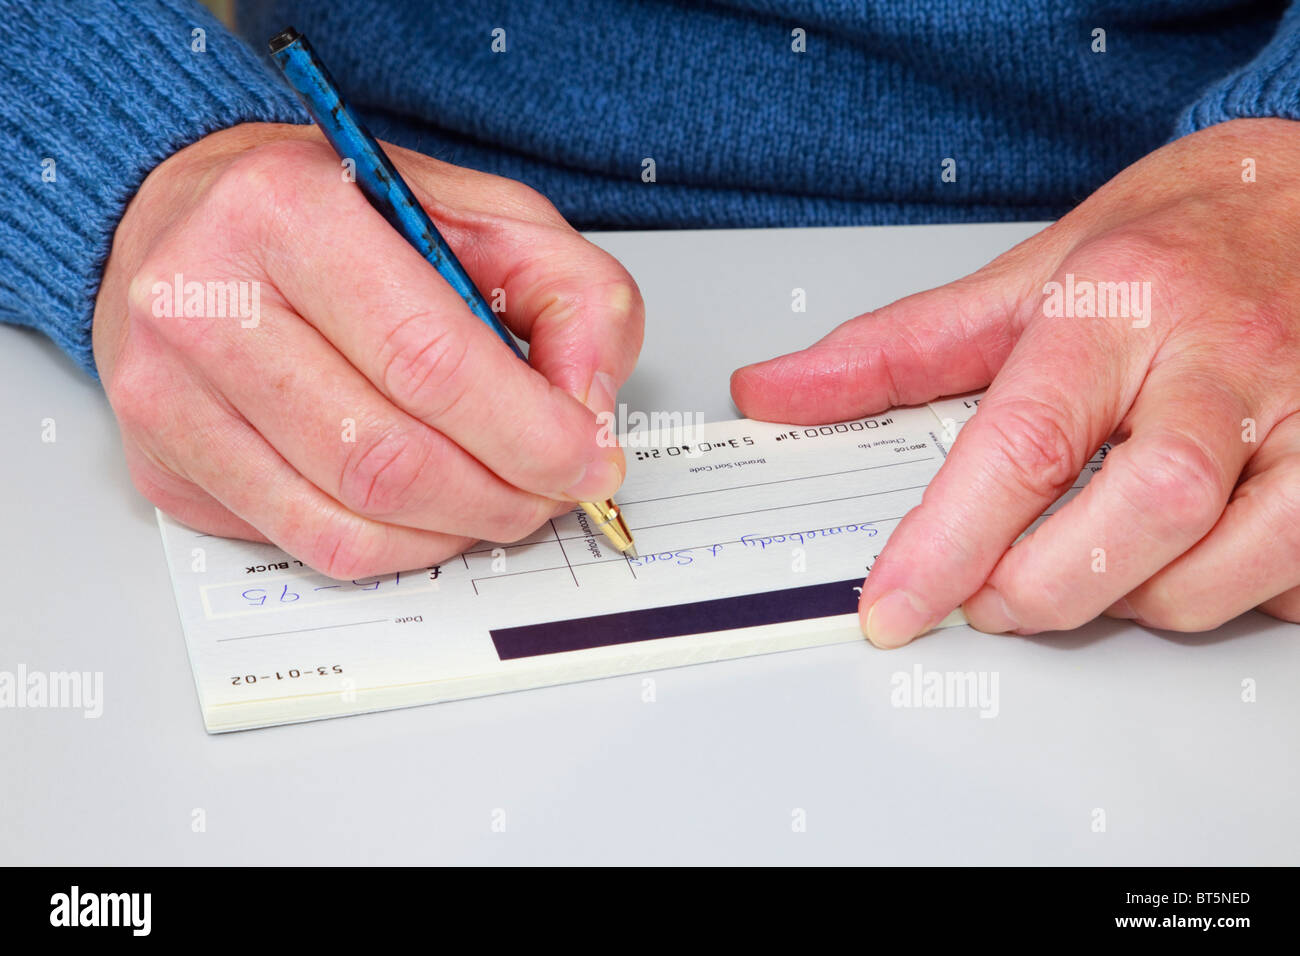 Close-up de una mujer madura escribir un cheque (cheque) en un talonario de cheques para pagar una factura. Inglaterra, Reino Unido (Gran Bretaña). Foto de stock